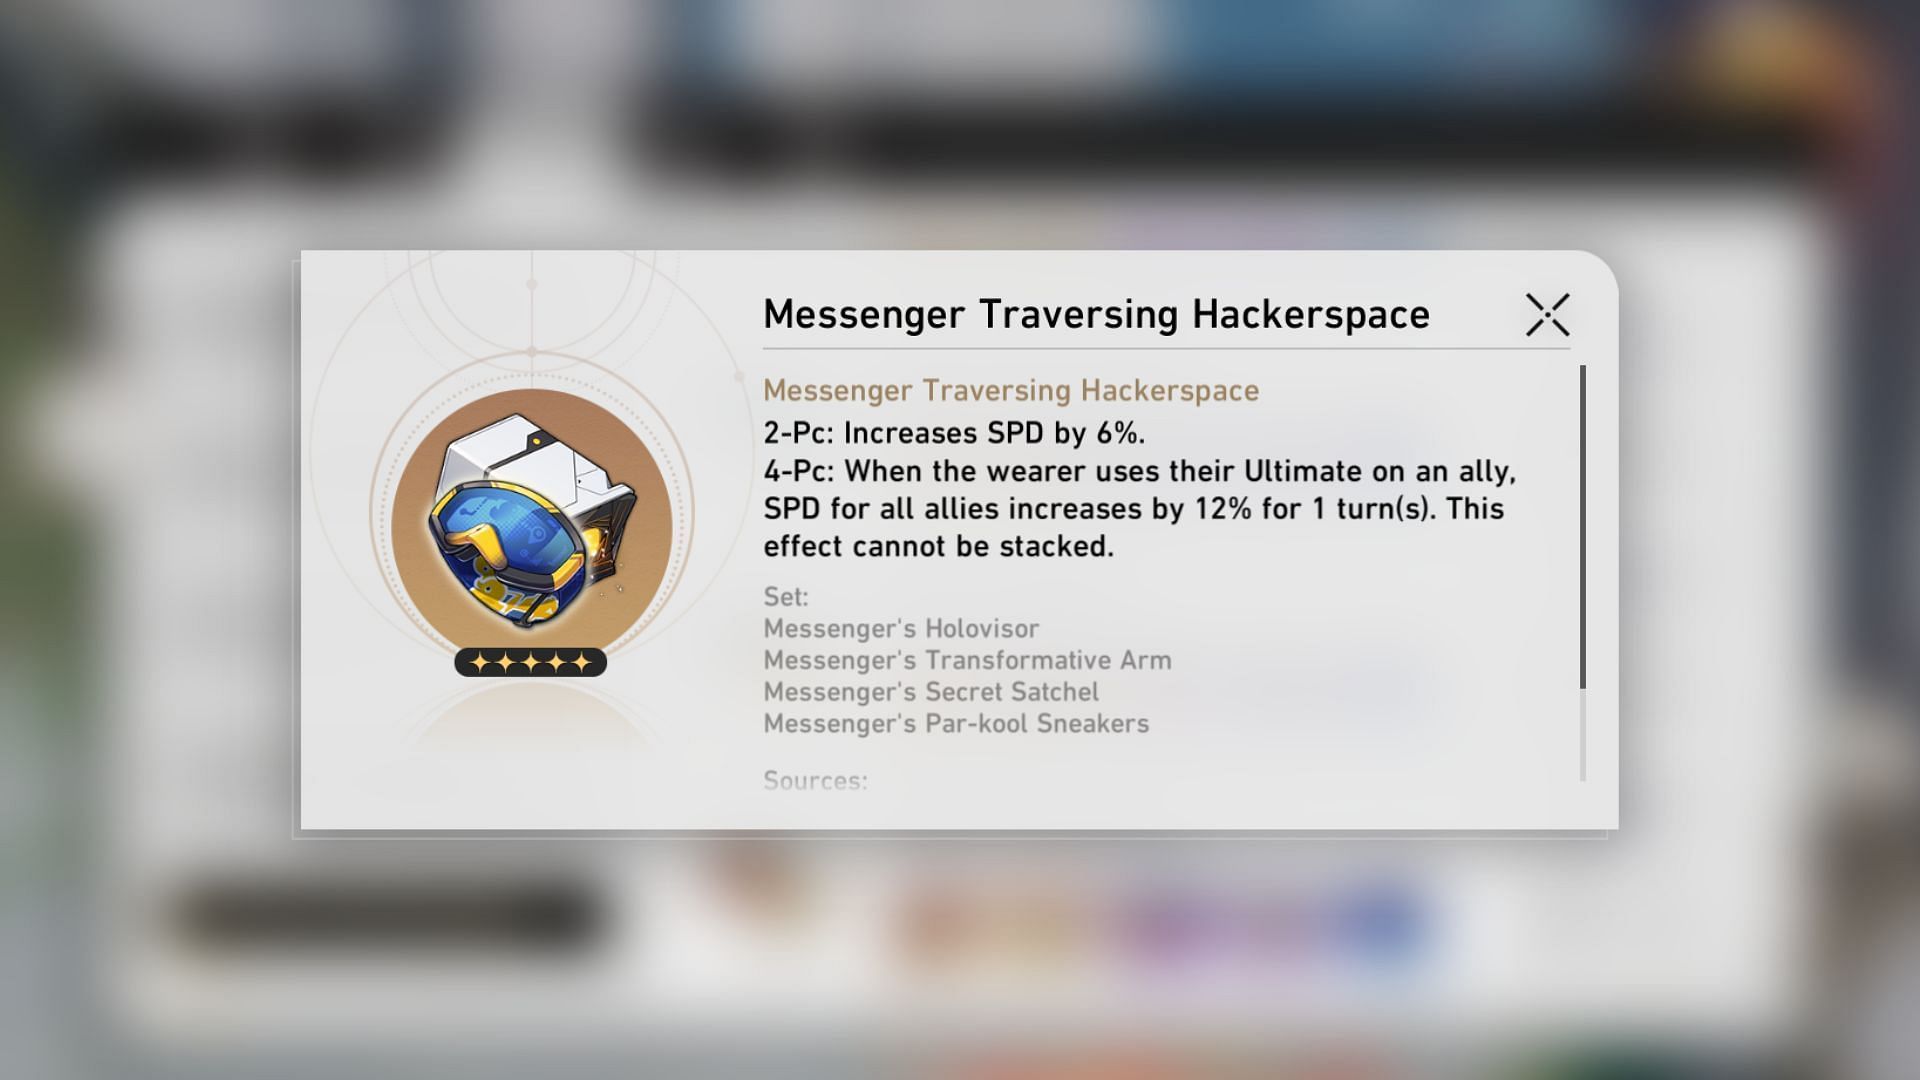 Messenger Traversing Hackerspace Relic Set (Image via HoYoverse)